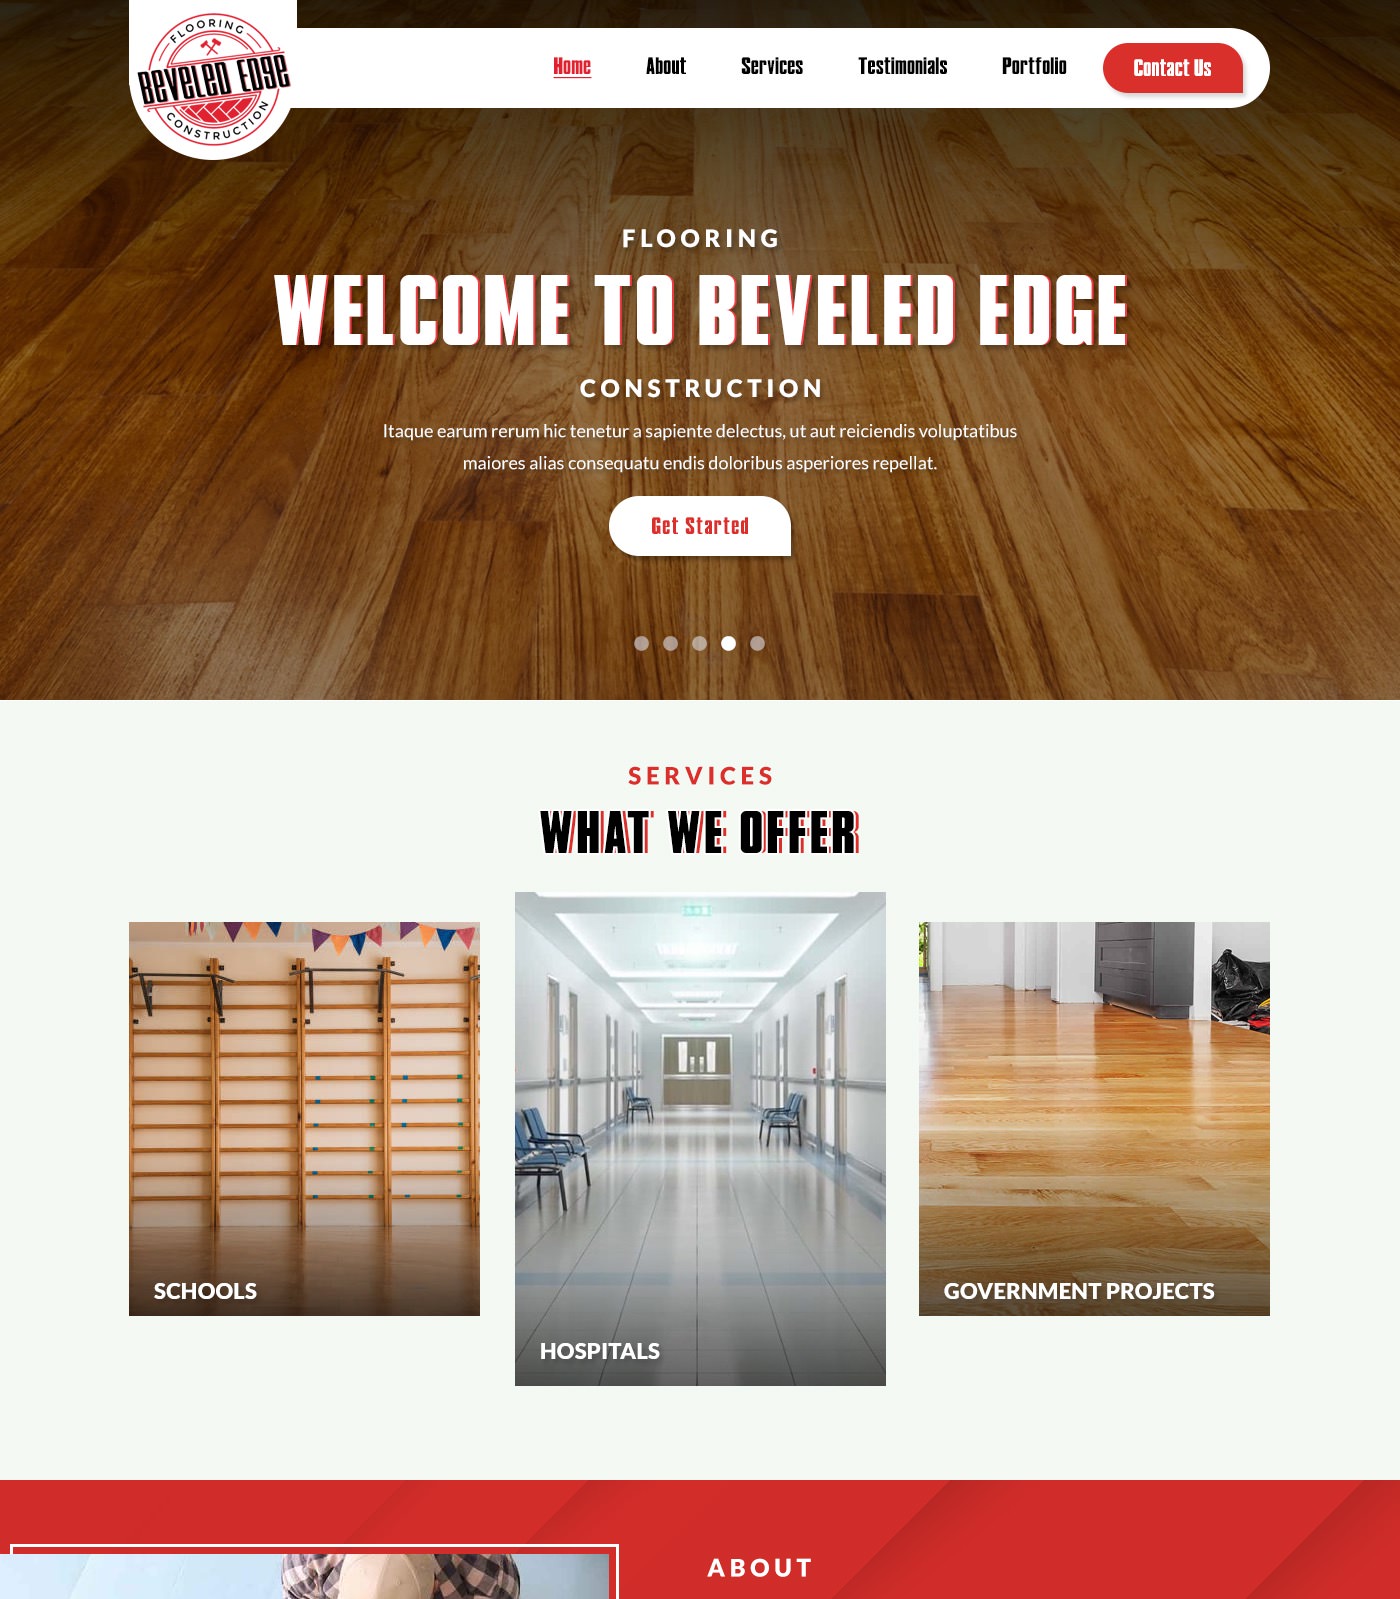 Flooring contractor website design example